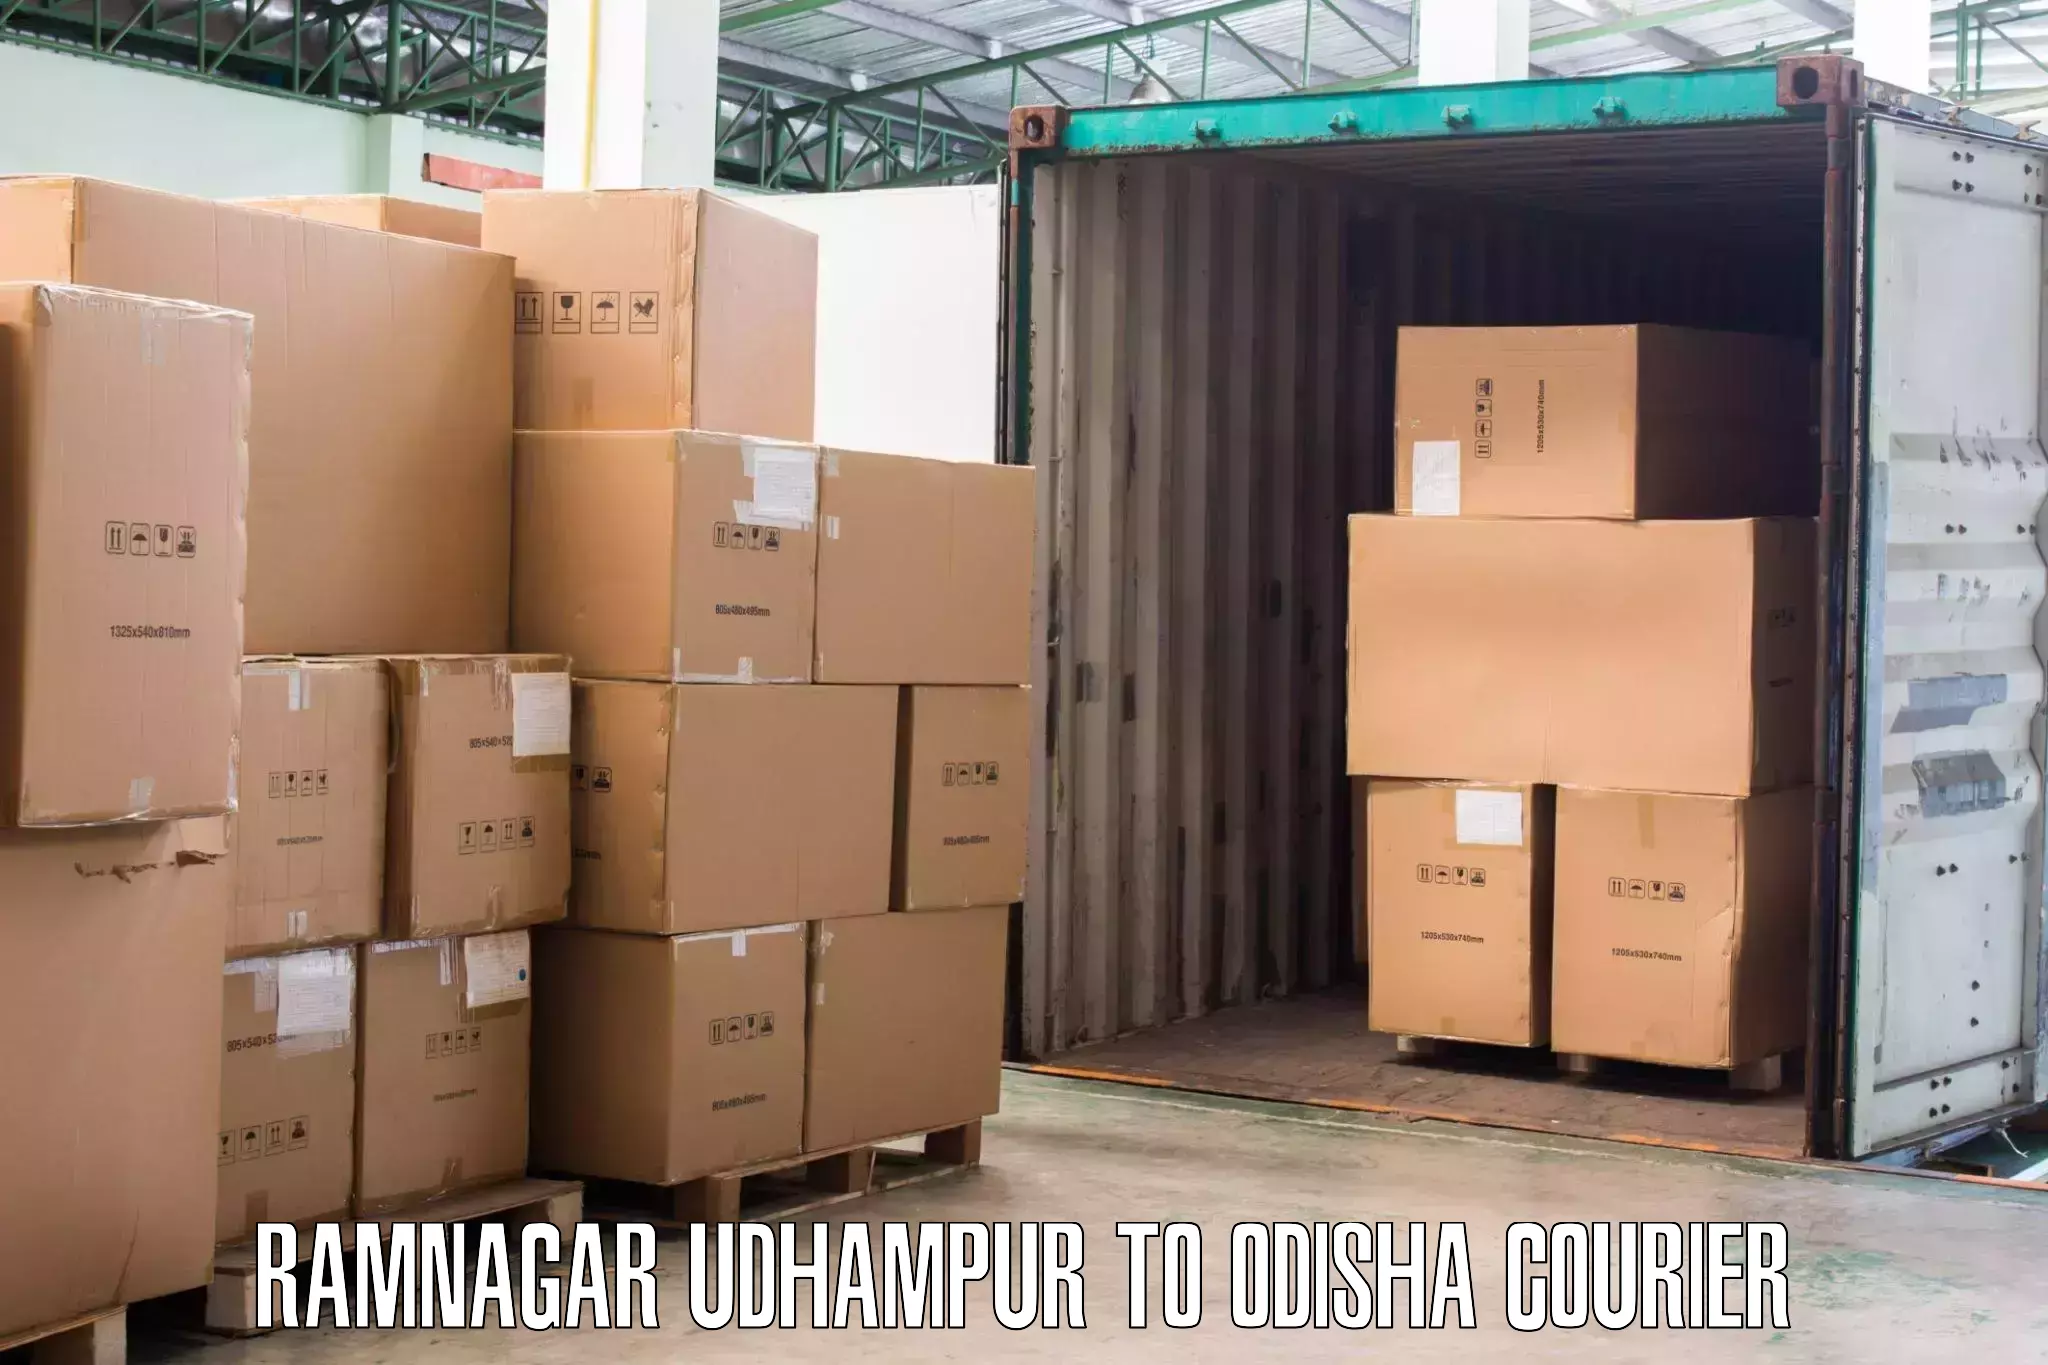 Moving and storage services Ramnagar Udhampur to Chandbali